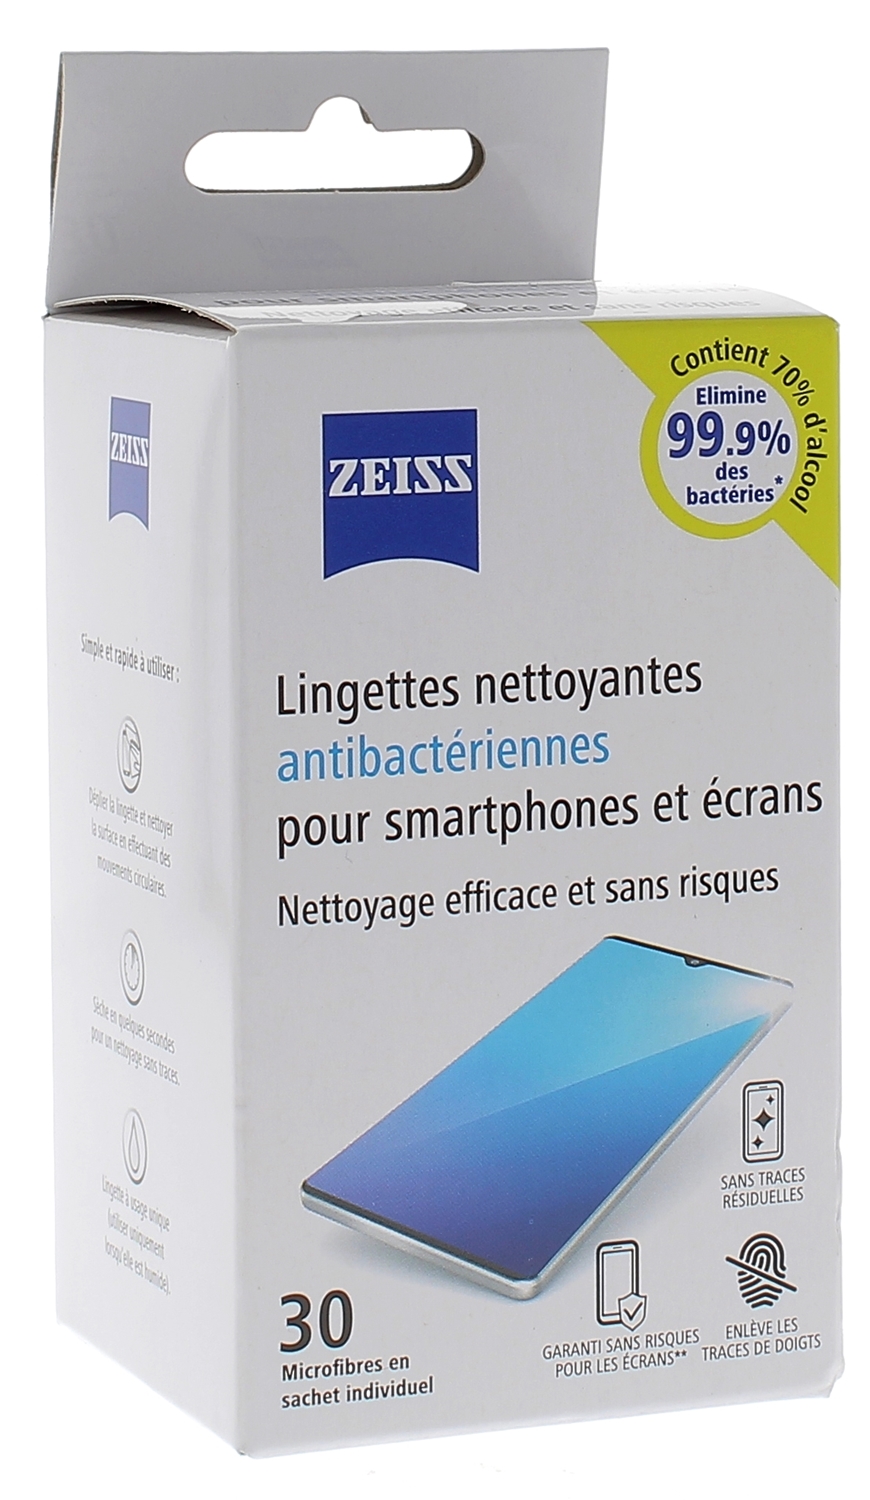 Lingettes nettoyantes antibactériennes smartphone Zeiss - boîte de 30 lingettes